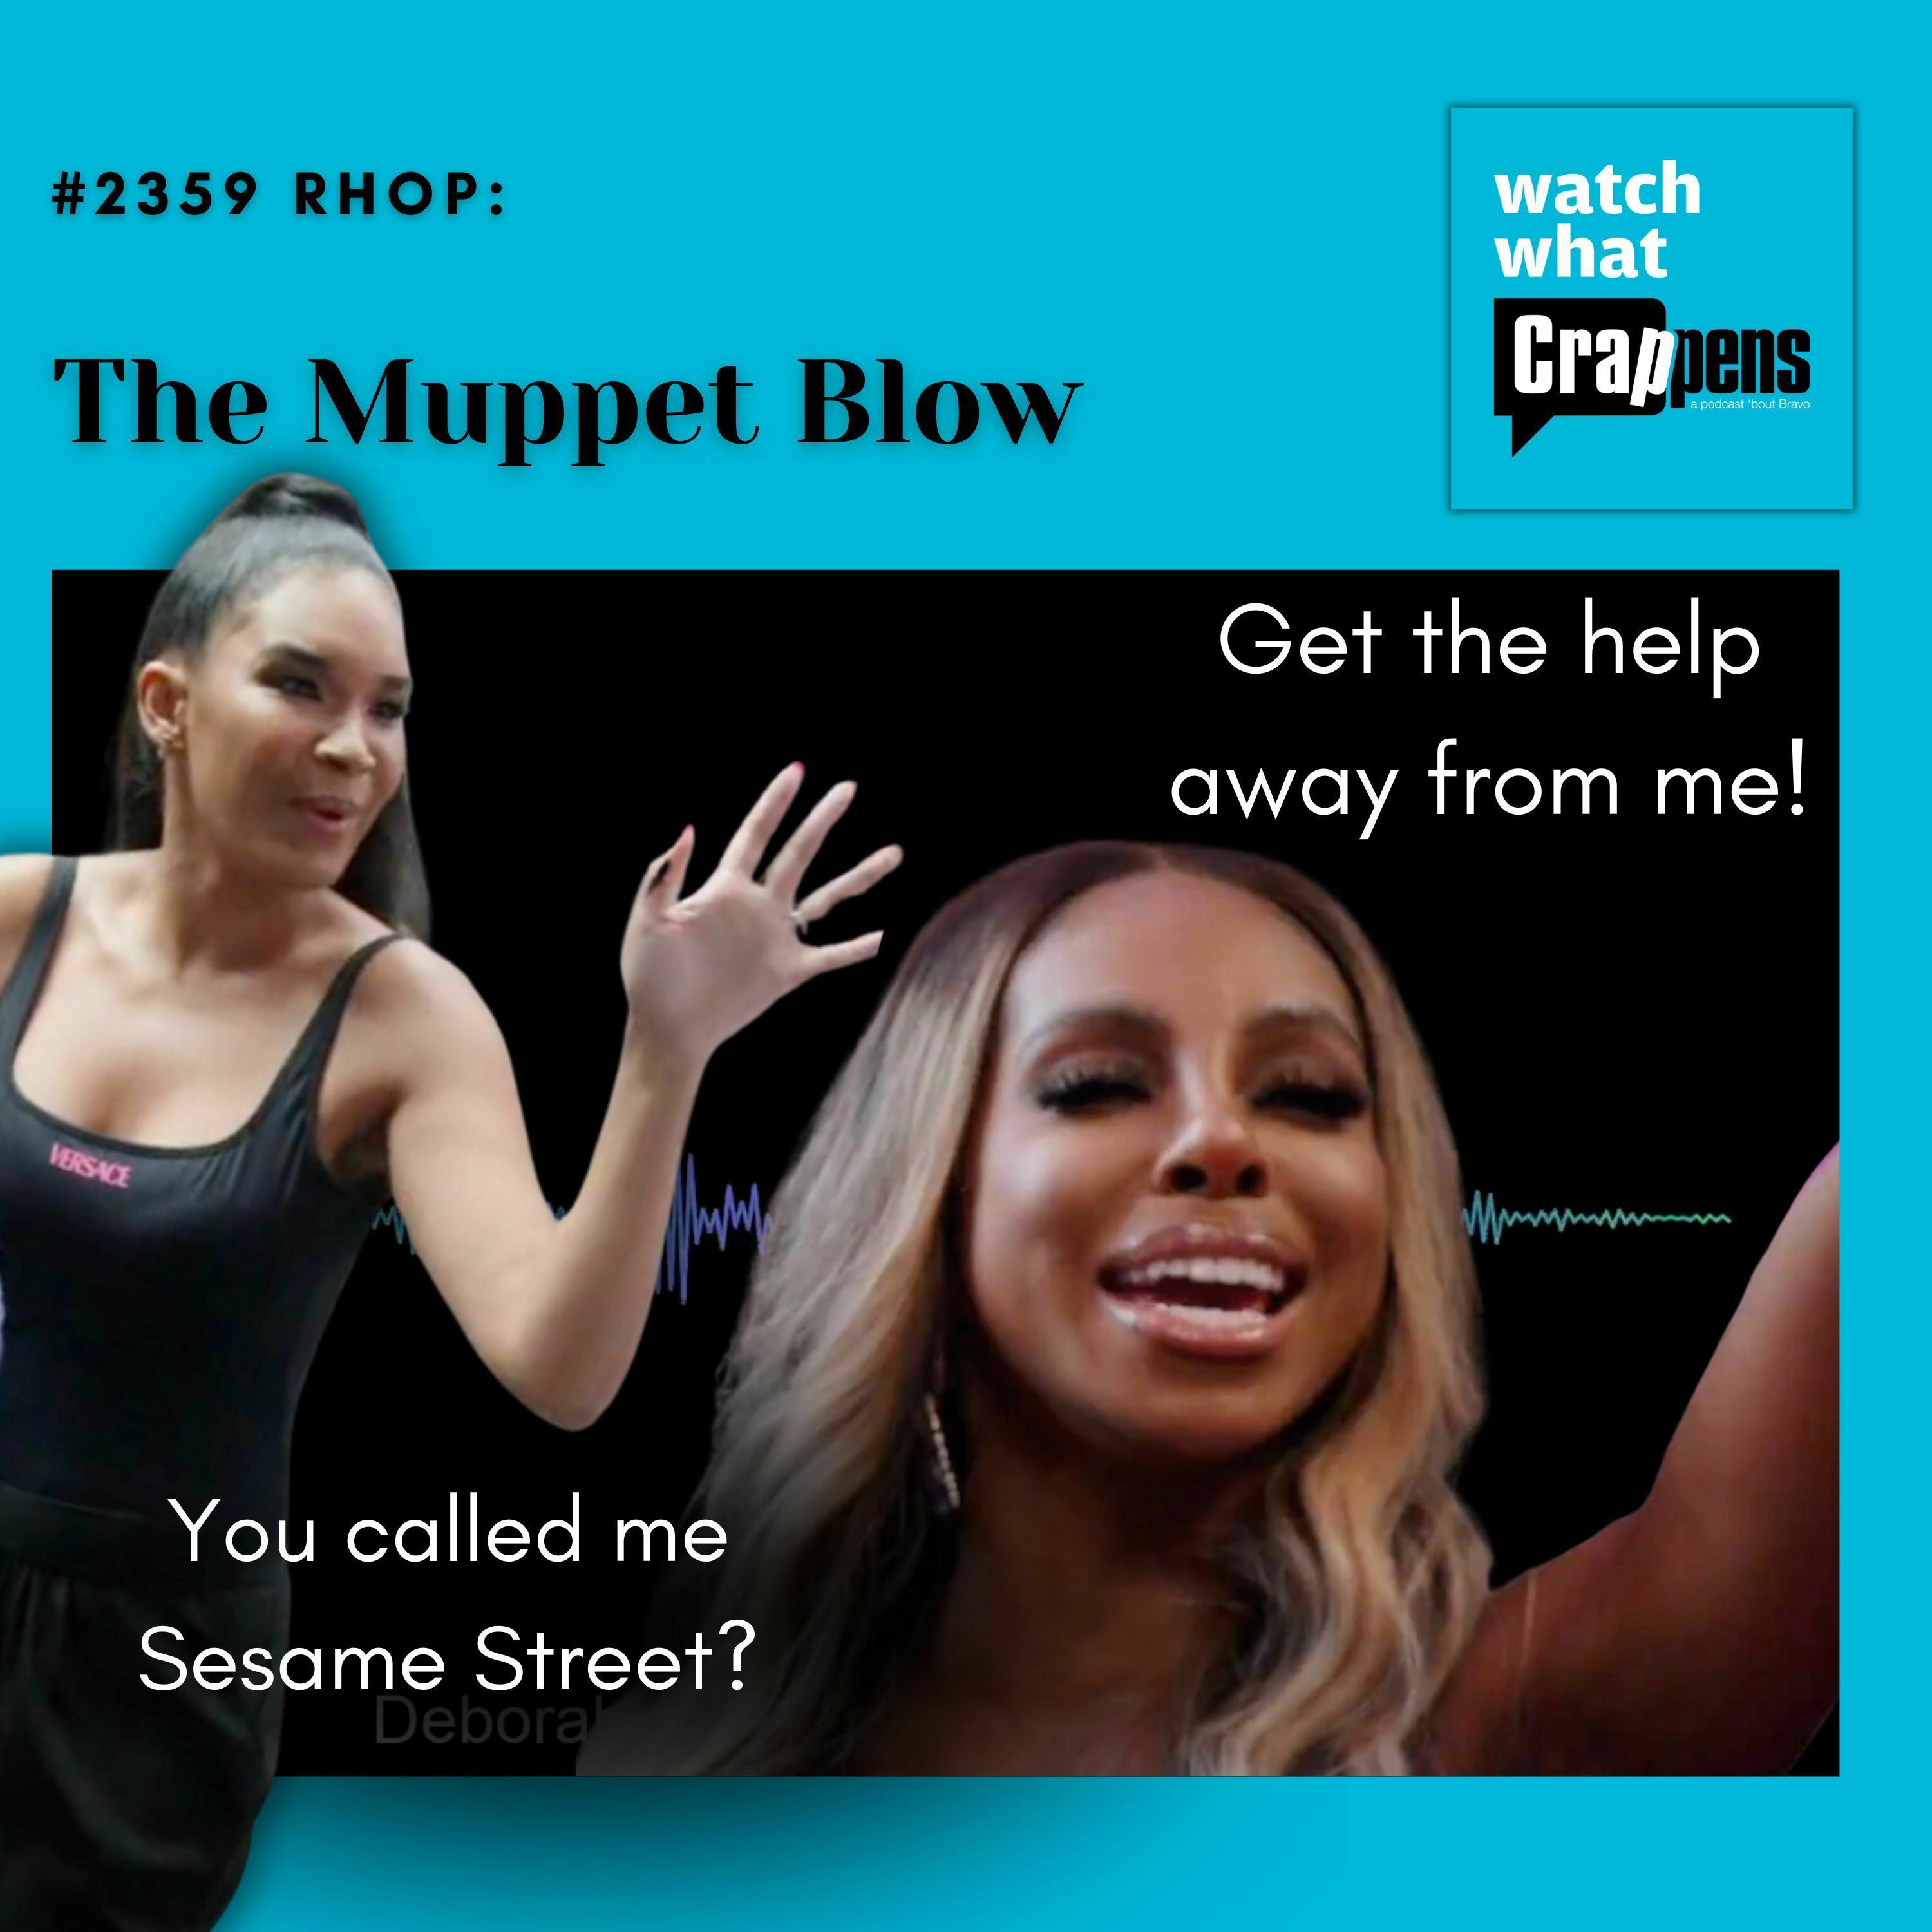 #2359 RHOP: The Muppet Blow